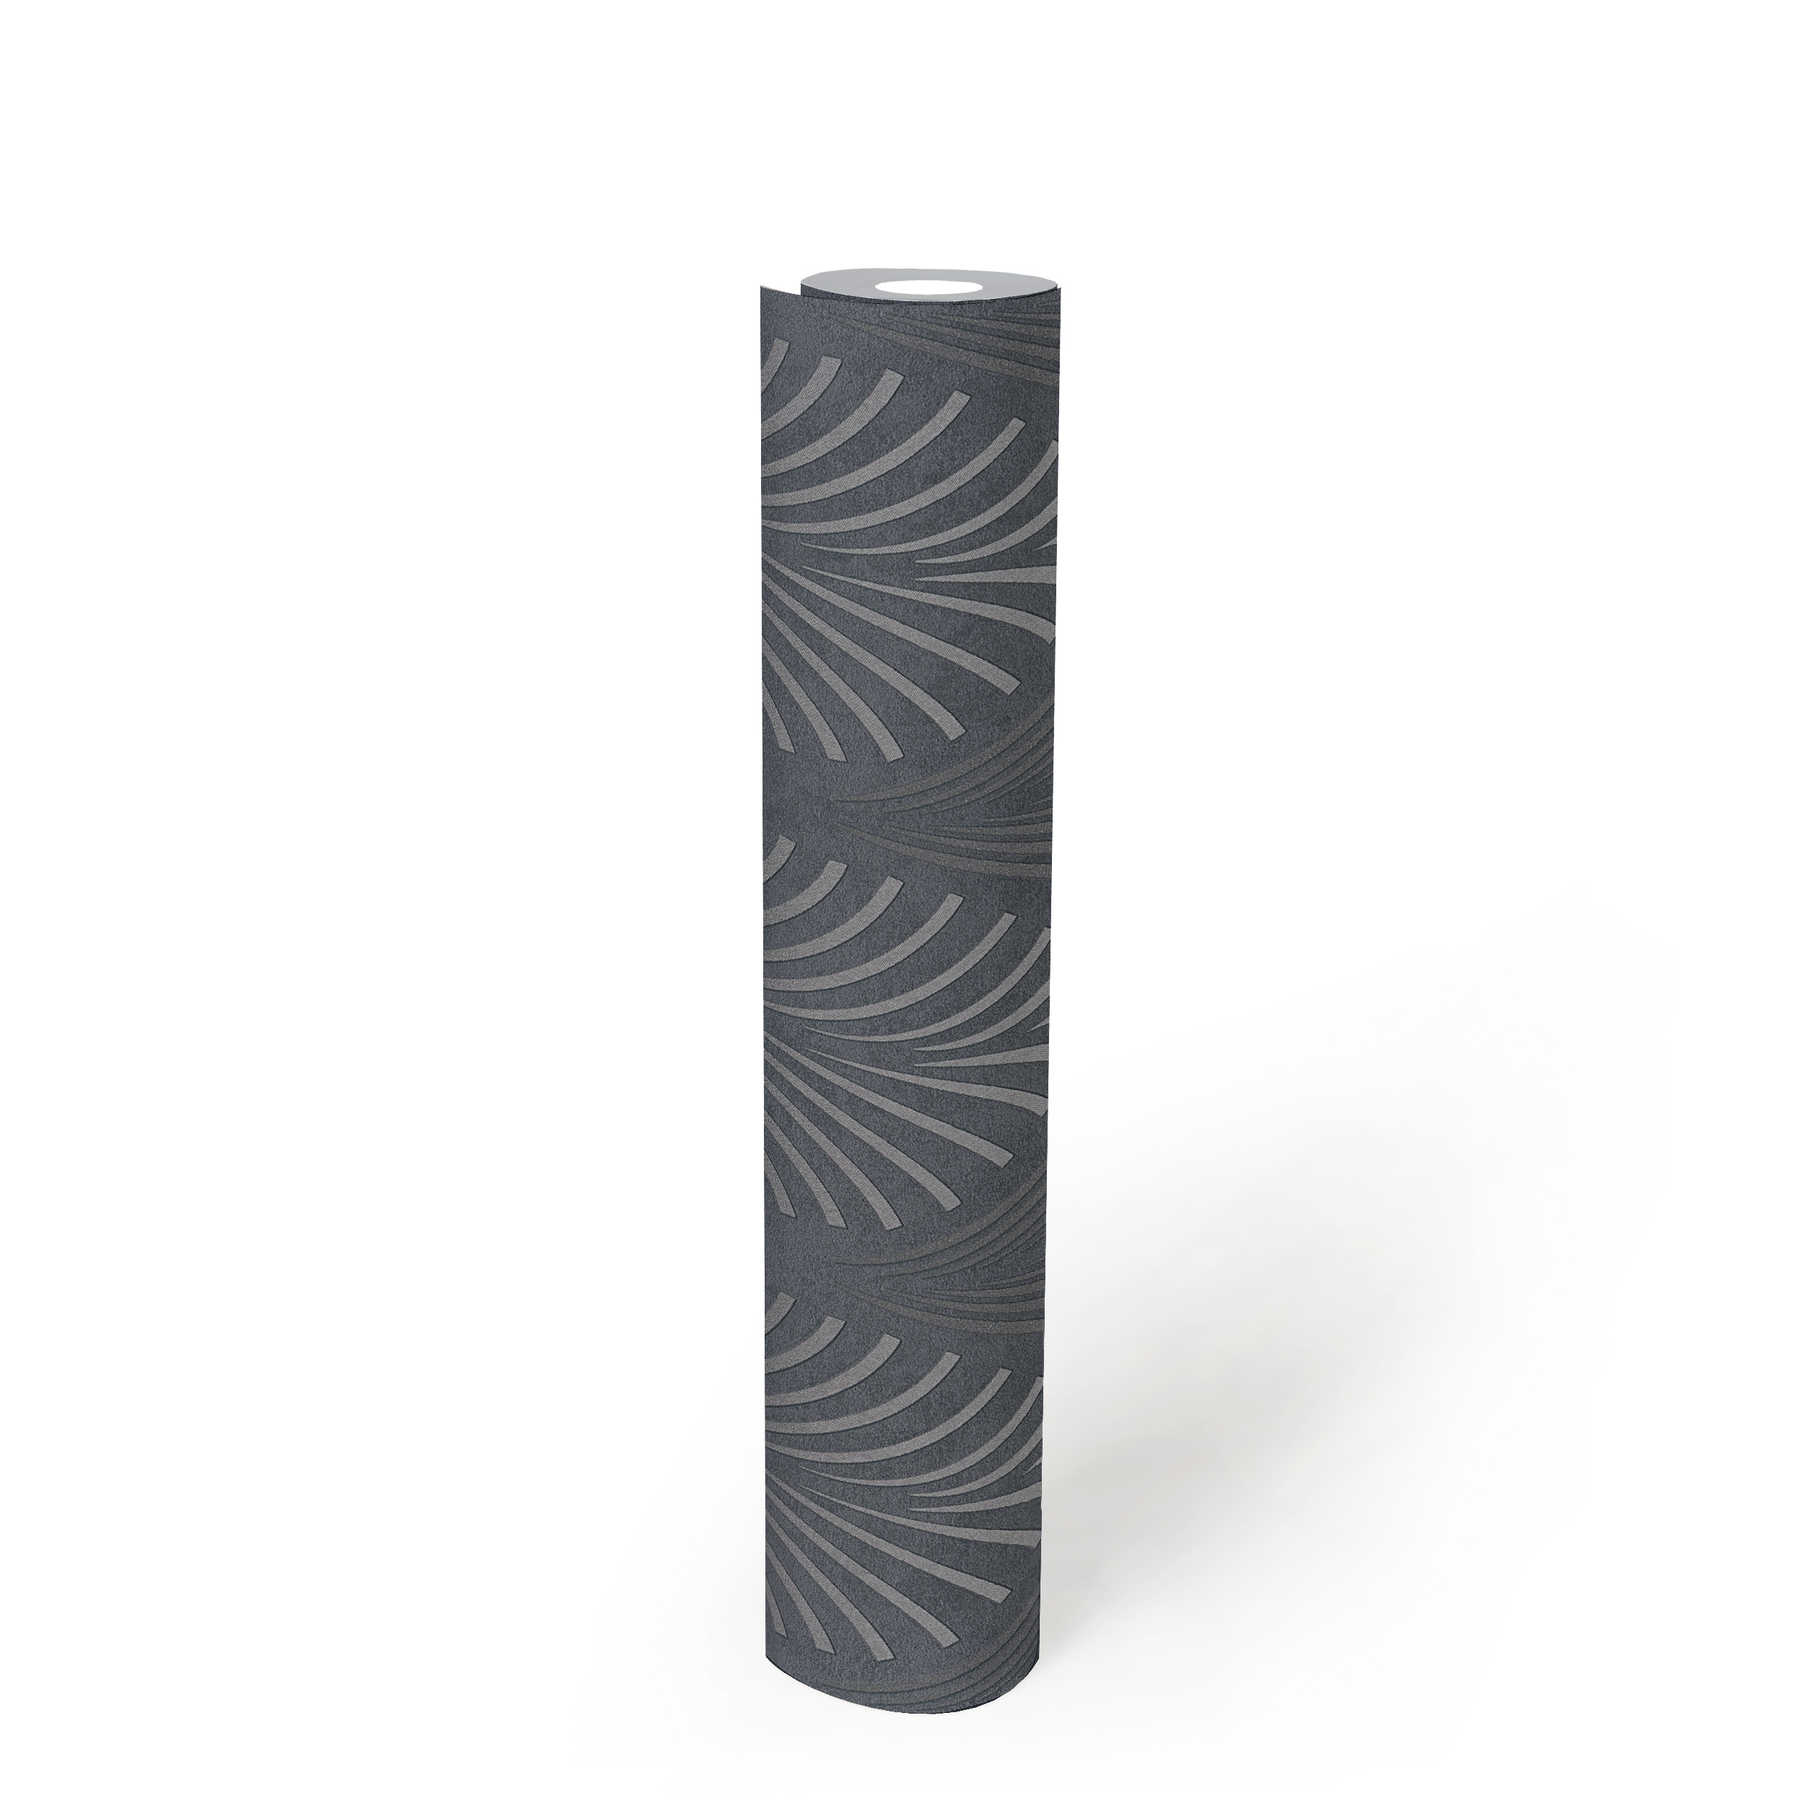             Retro-Tapete Art Deco Stil mit geometrischem Muster – Schwarz, Silber, Grau
        